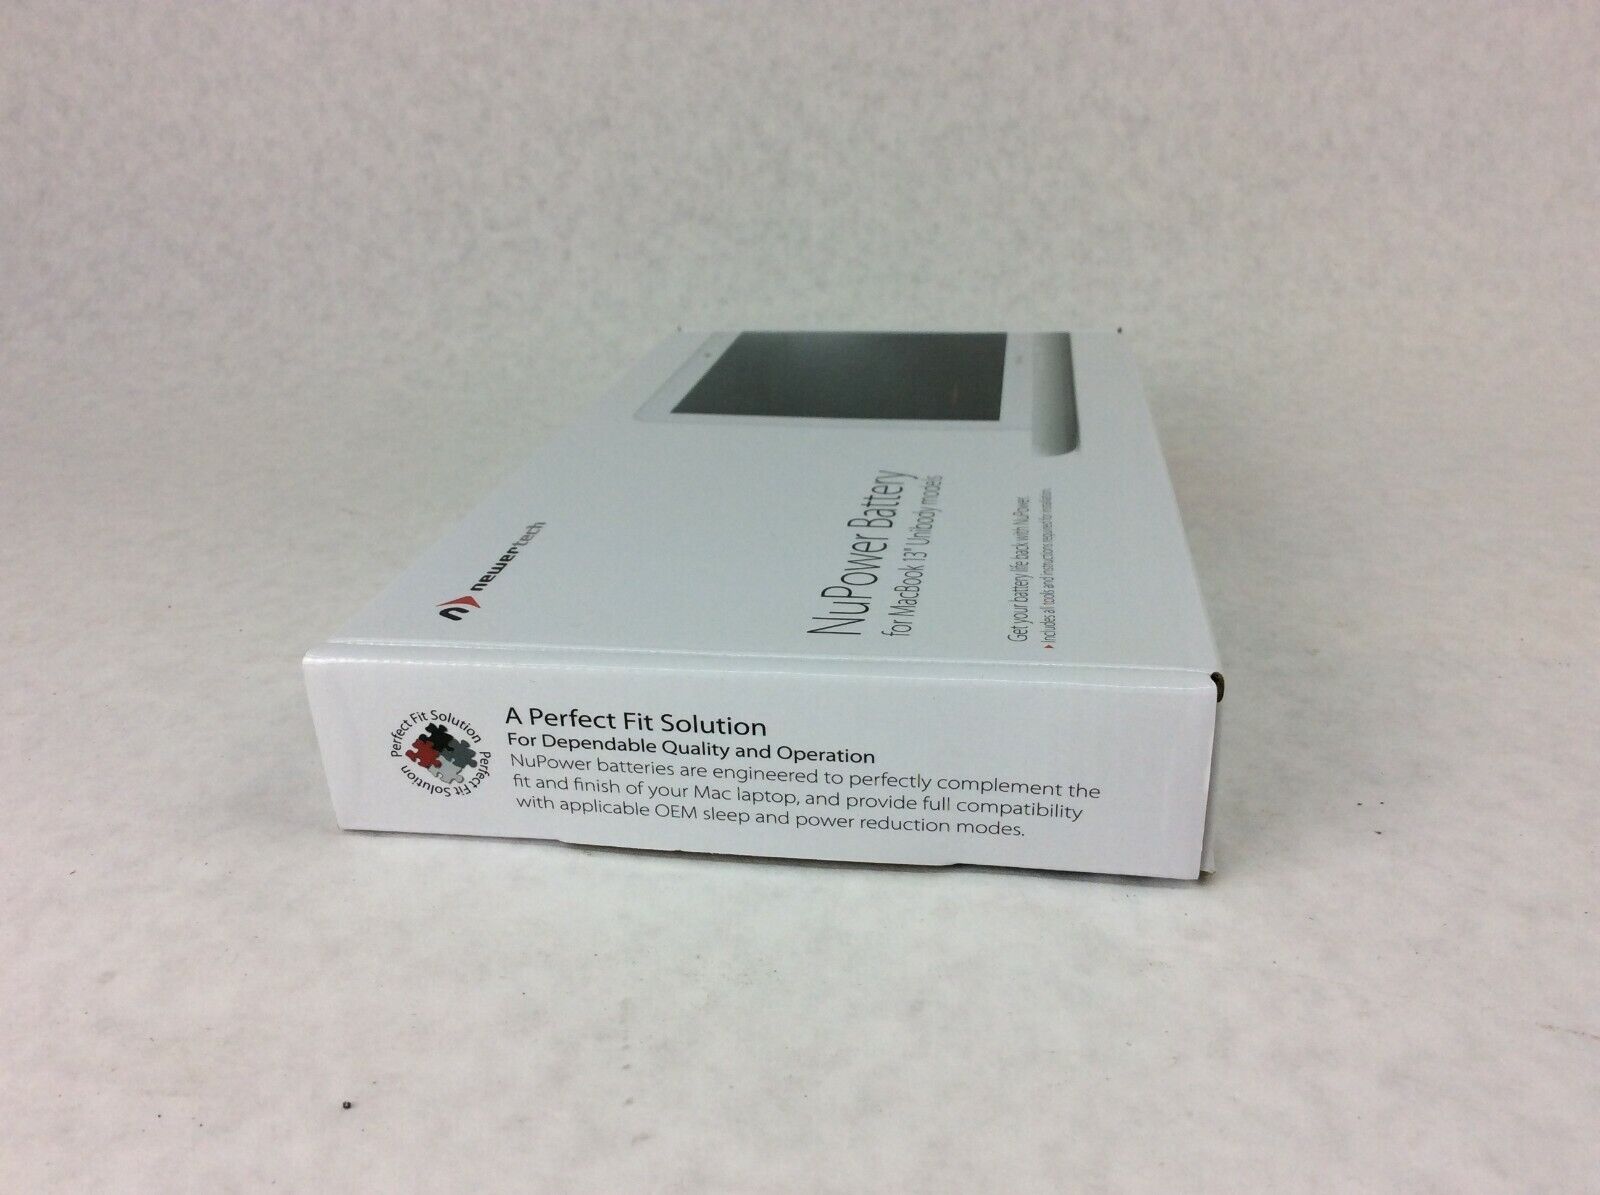 Newertech NuPower Battery 13" Unibody Apple MacBook 6.1 7.1 A1331 Battery 65W